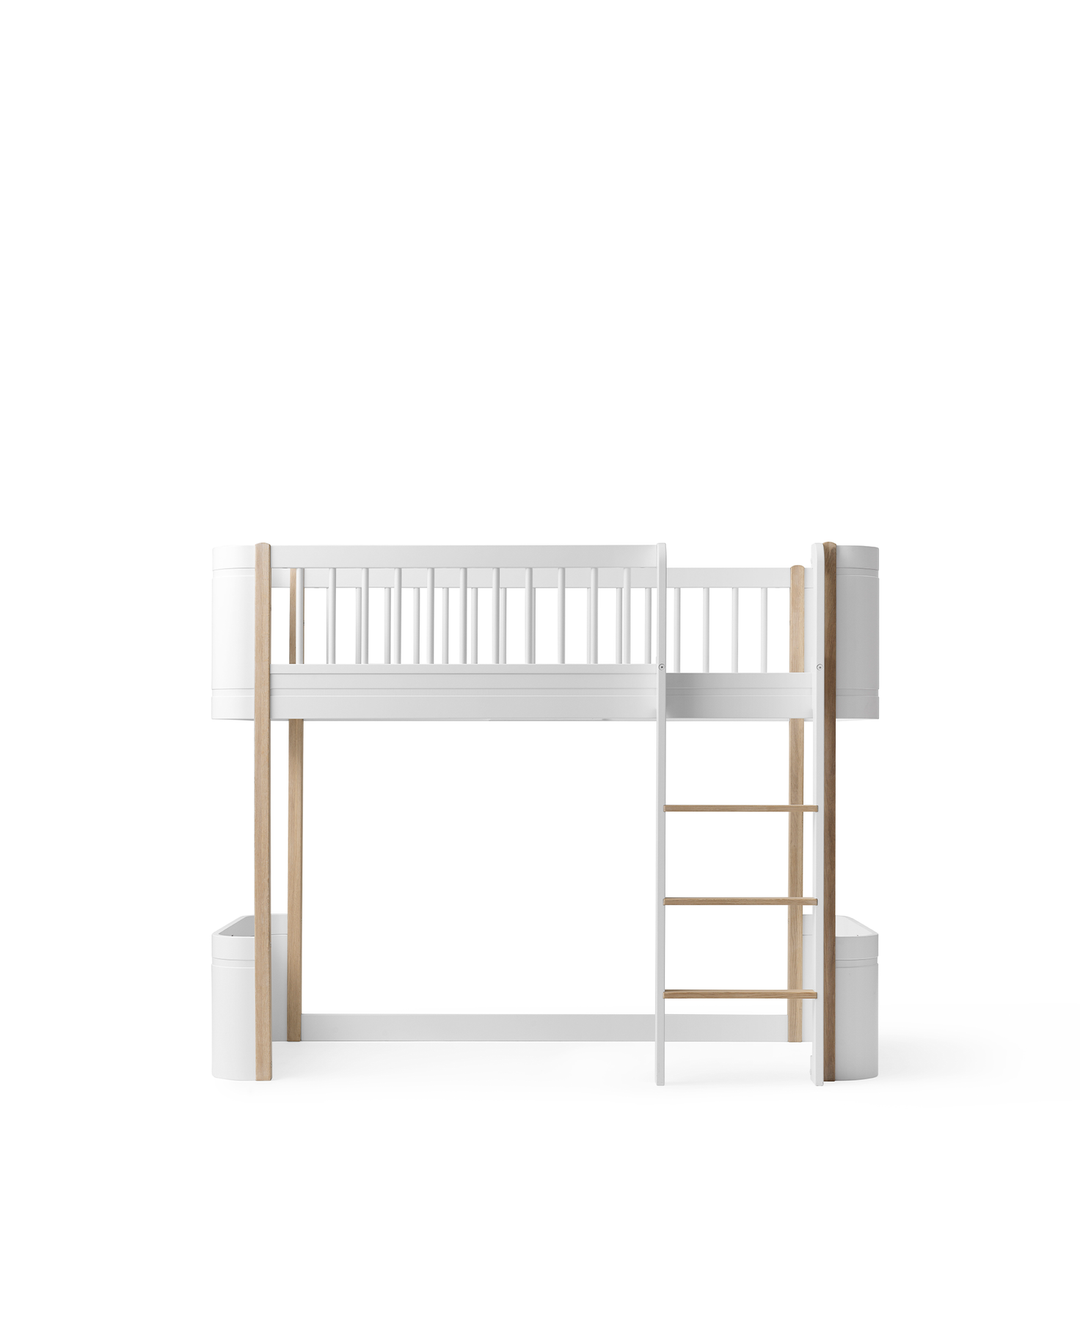 Oliver Furniture conversieset transformeert een Mini+ Basic Bed in een wit eiken  Mini+ Low Loft Bed, ideaal voor creatieve speelruimte.